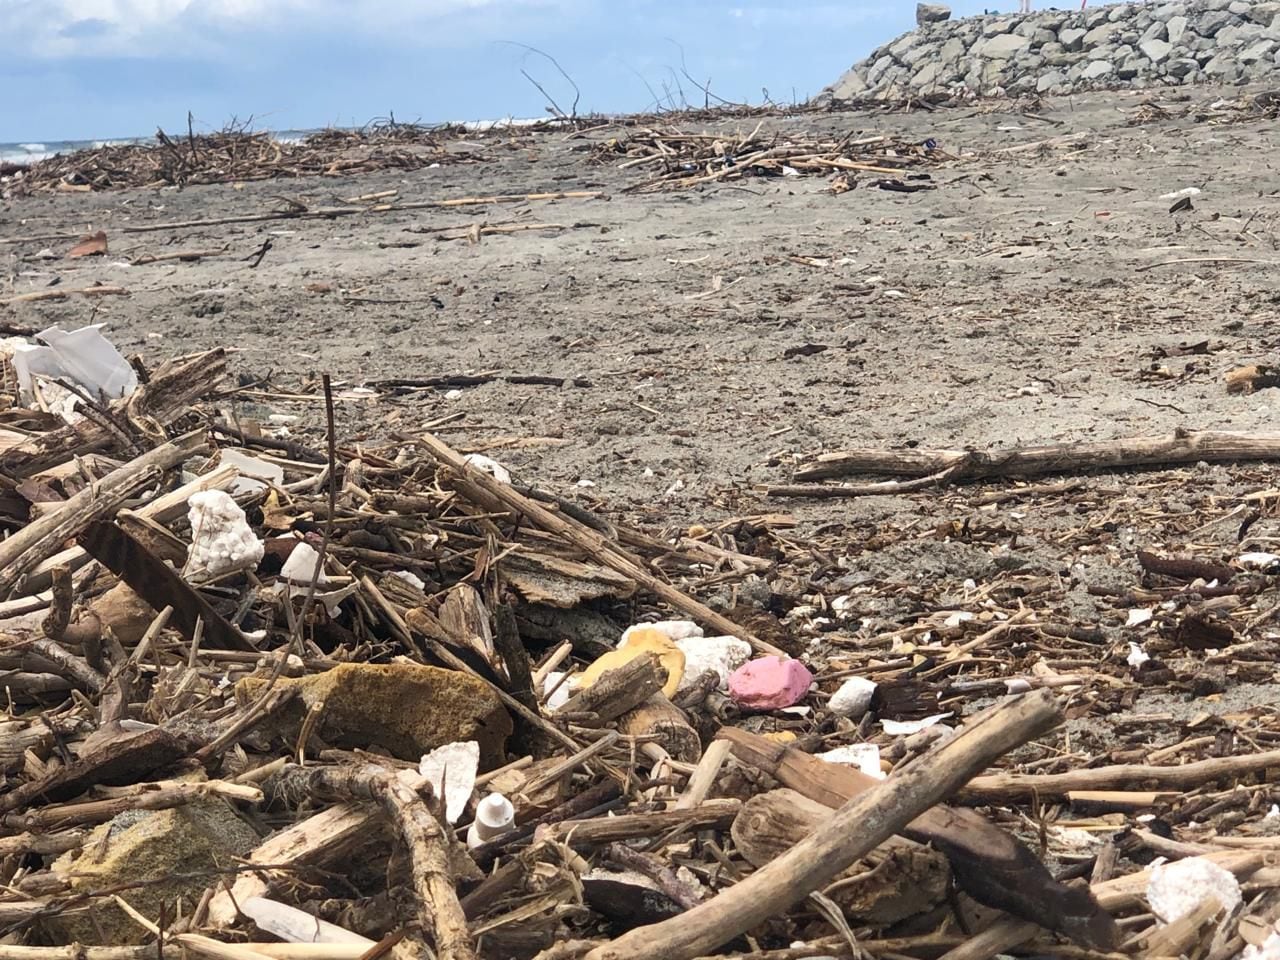 Playa centro de Rosarito tiene basura tras lluvias